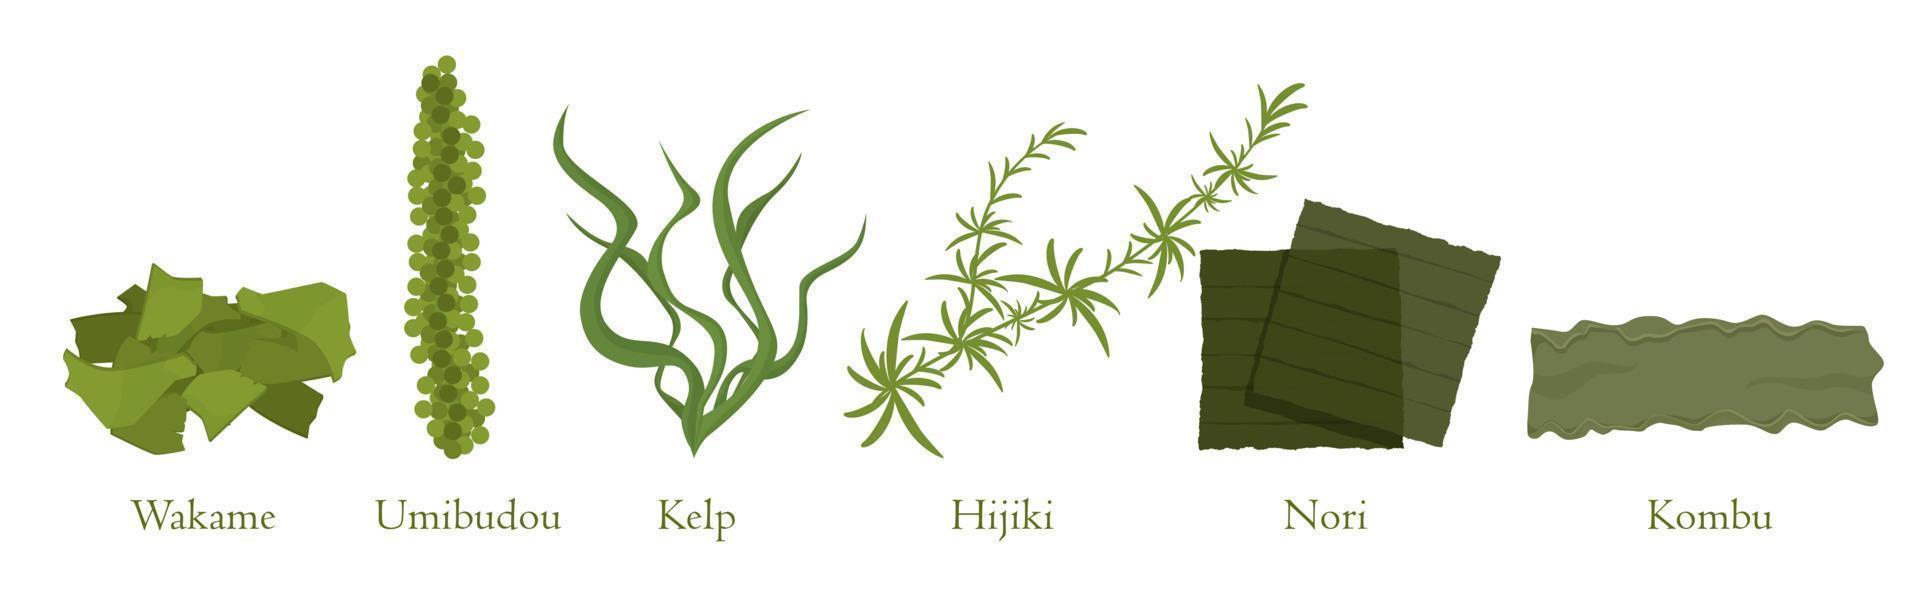 caricatura, algas, conjunto, vector, gráfico, illustration. colección de plantas marinas de algas naturales vector